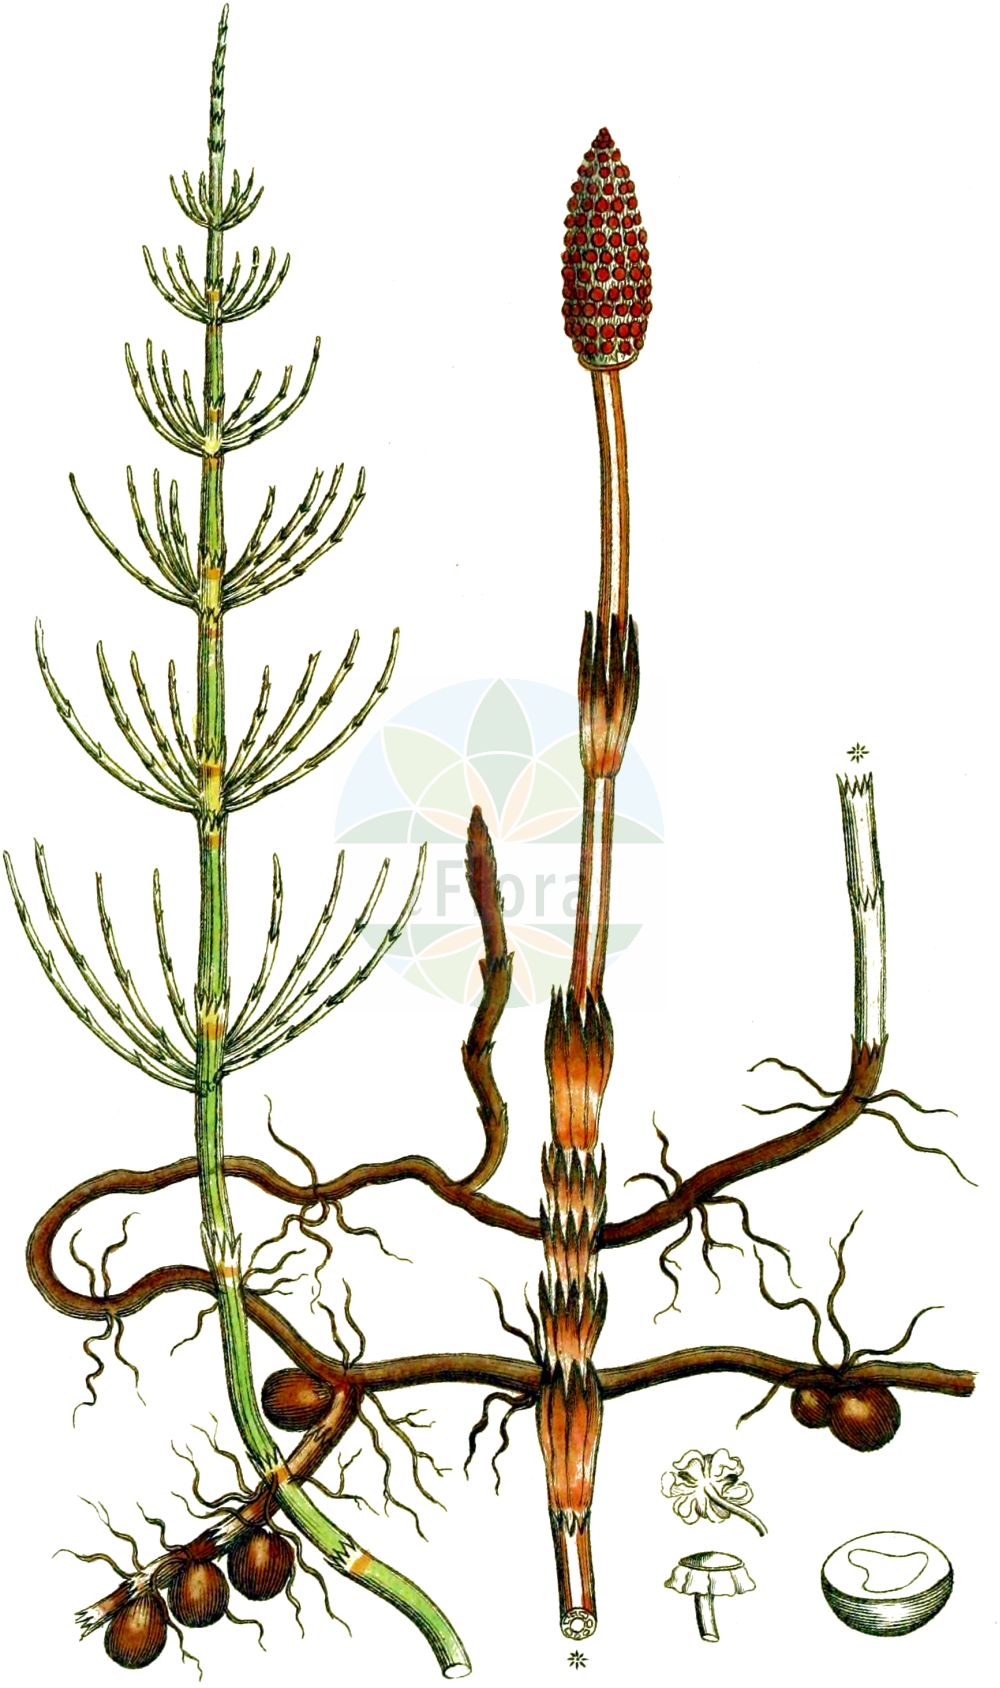 Historische Abbildung von Equisetum arvense (Acker-Schachtelhalm - Field Horsetail). Das Bild zeigt Blatt, Bluete, Frucht und Same. ---- Historical Drawing of Equisetum arvense (Acker-Schachtelhalm - Field Horsetail). The image is showing leaf, flower, fruit and seed.(Equisetum arvense,Acker-Schachtelhalm,Field Horsetail,Equisetum arvense,Equisetum boreale,Acker-Schachtelhalm,Zinnkraut,Scheuerkraut,Pferdeschwanzkraut,Katzenschweif,Field Horsetail,Common Horsetail,Marestails,Scouring Rush,Toad Pipe,Equisetum,Schachtelhalm,Horsetail,Equisetaceae,Schachtelhalmgewächse,Horsetail family,Blatt,Bluete,Frucht,Same,leaf,flower,fruit,seed,Svensk Botanik (Svensk Botanik))